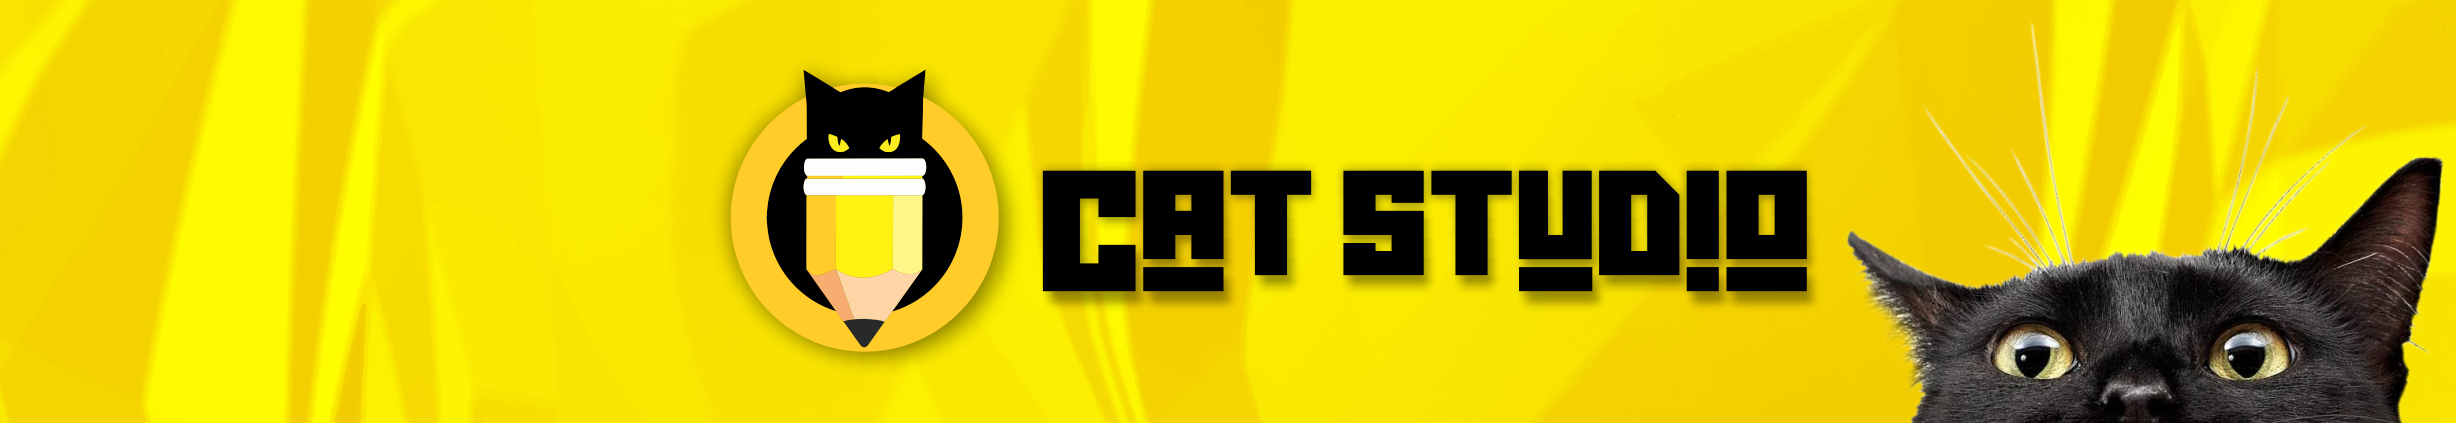 CAT STUDIO's profile banner